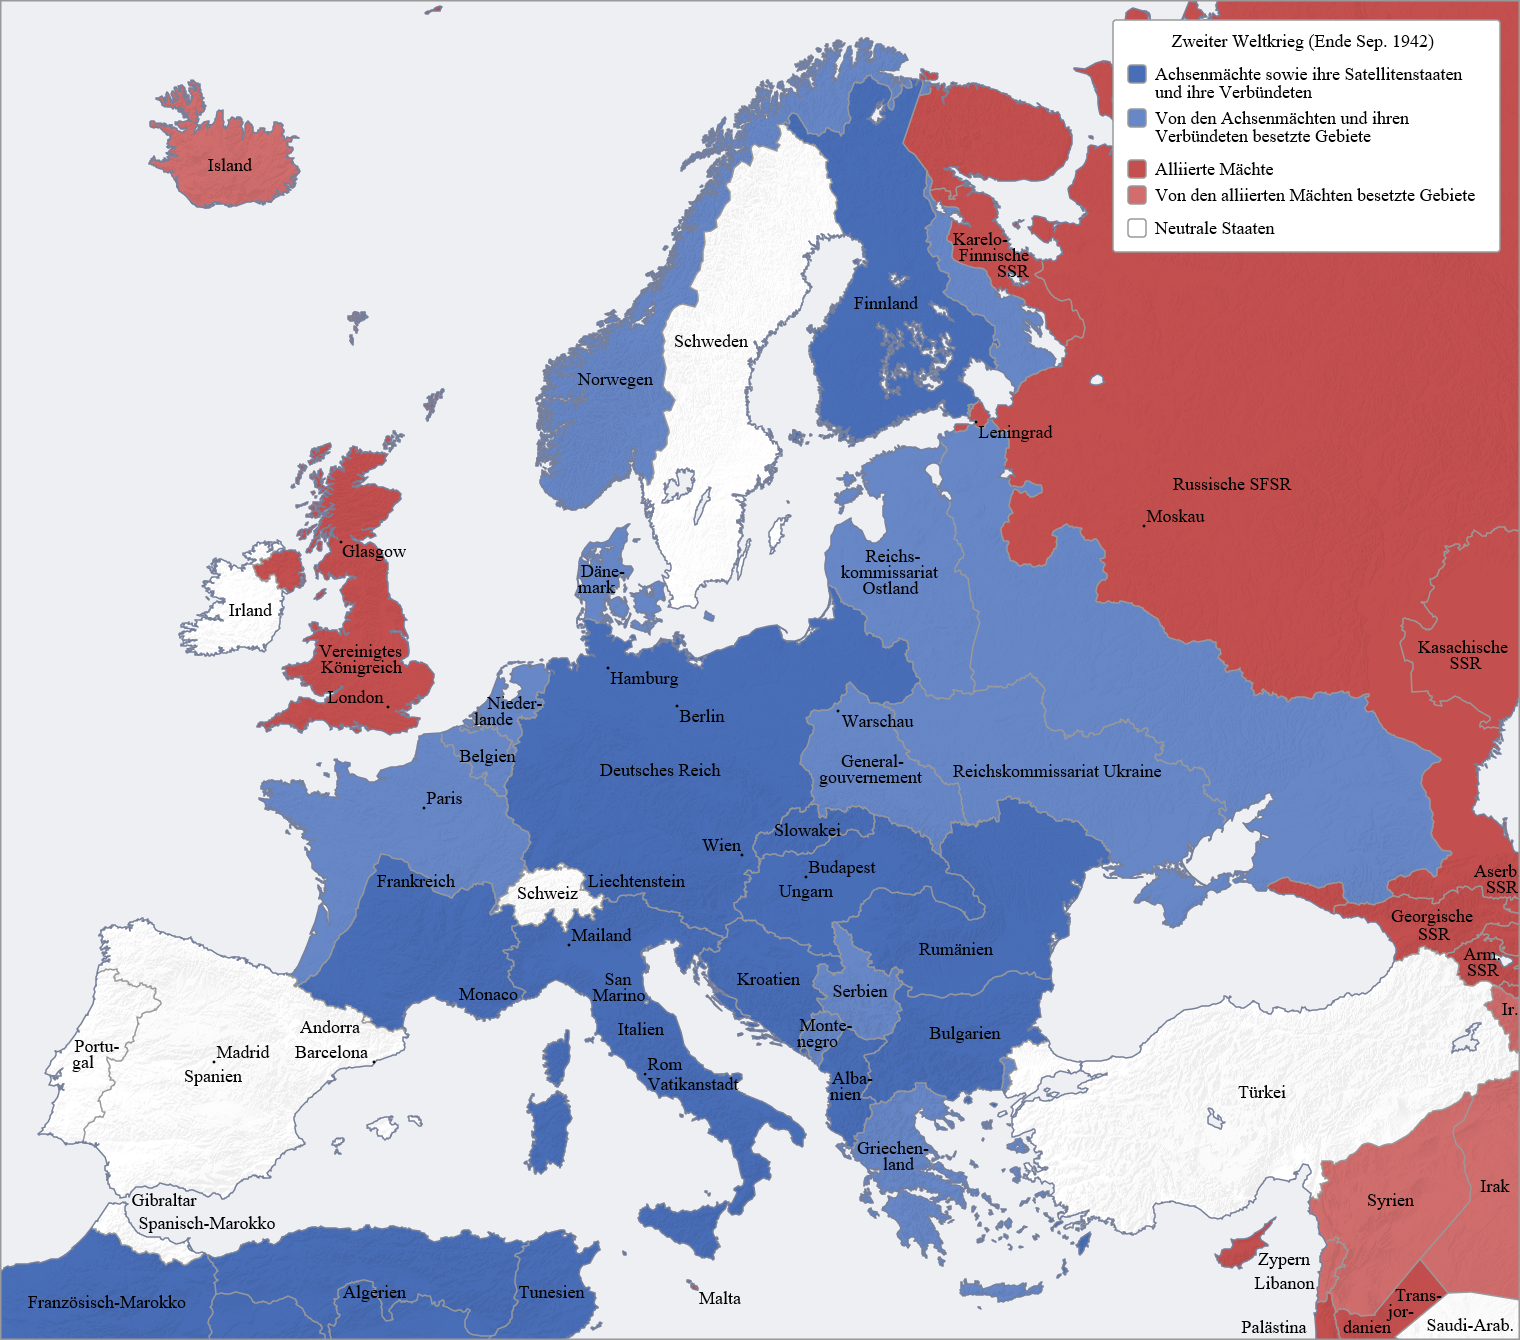 Европа, конец 1942 года. Максимальные исторические рубежи расширения на Восток современным Западом еще не достигнуты 